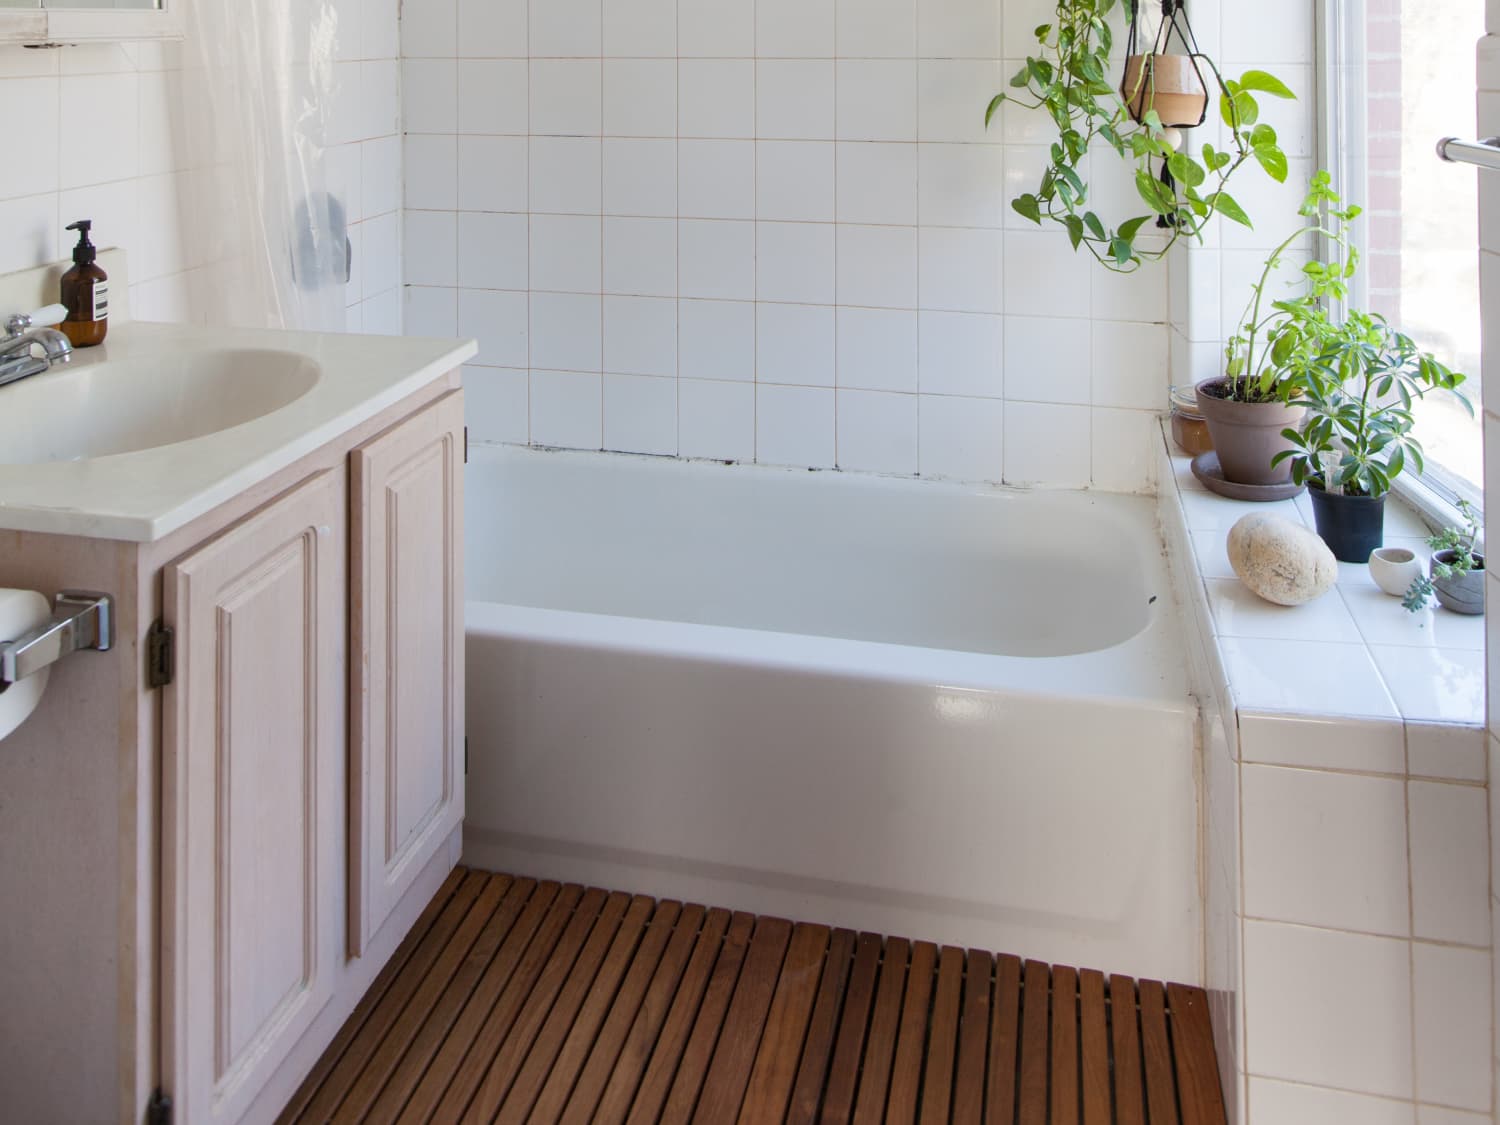 bamboo Kitchen Bath Bathroom Shower Floor Home Door Mat Rug Non-Slip new 